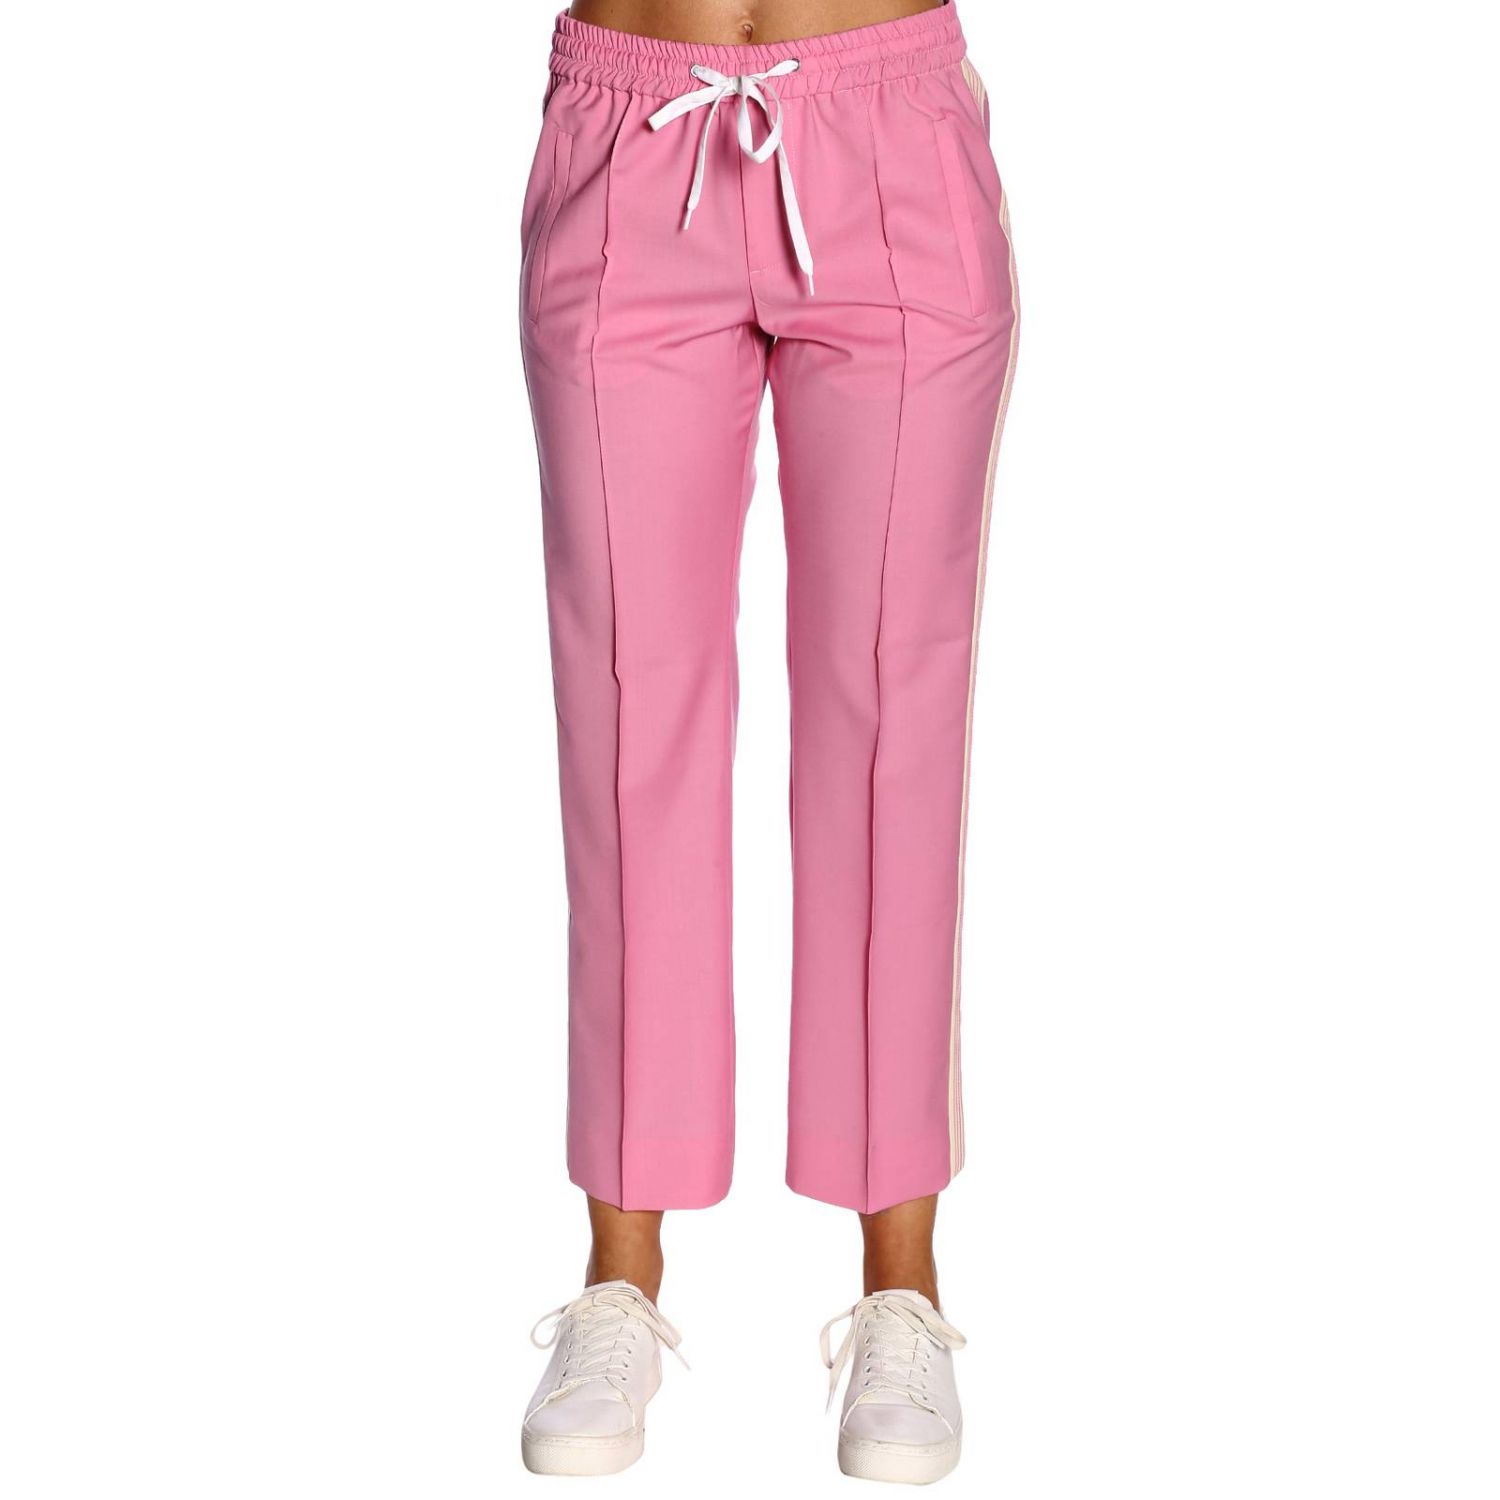 Pants women Miu Miu | Pants Miu Miu Women Pink | Pants Miu Miu MP1243 ...